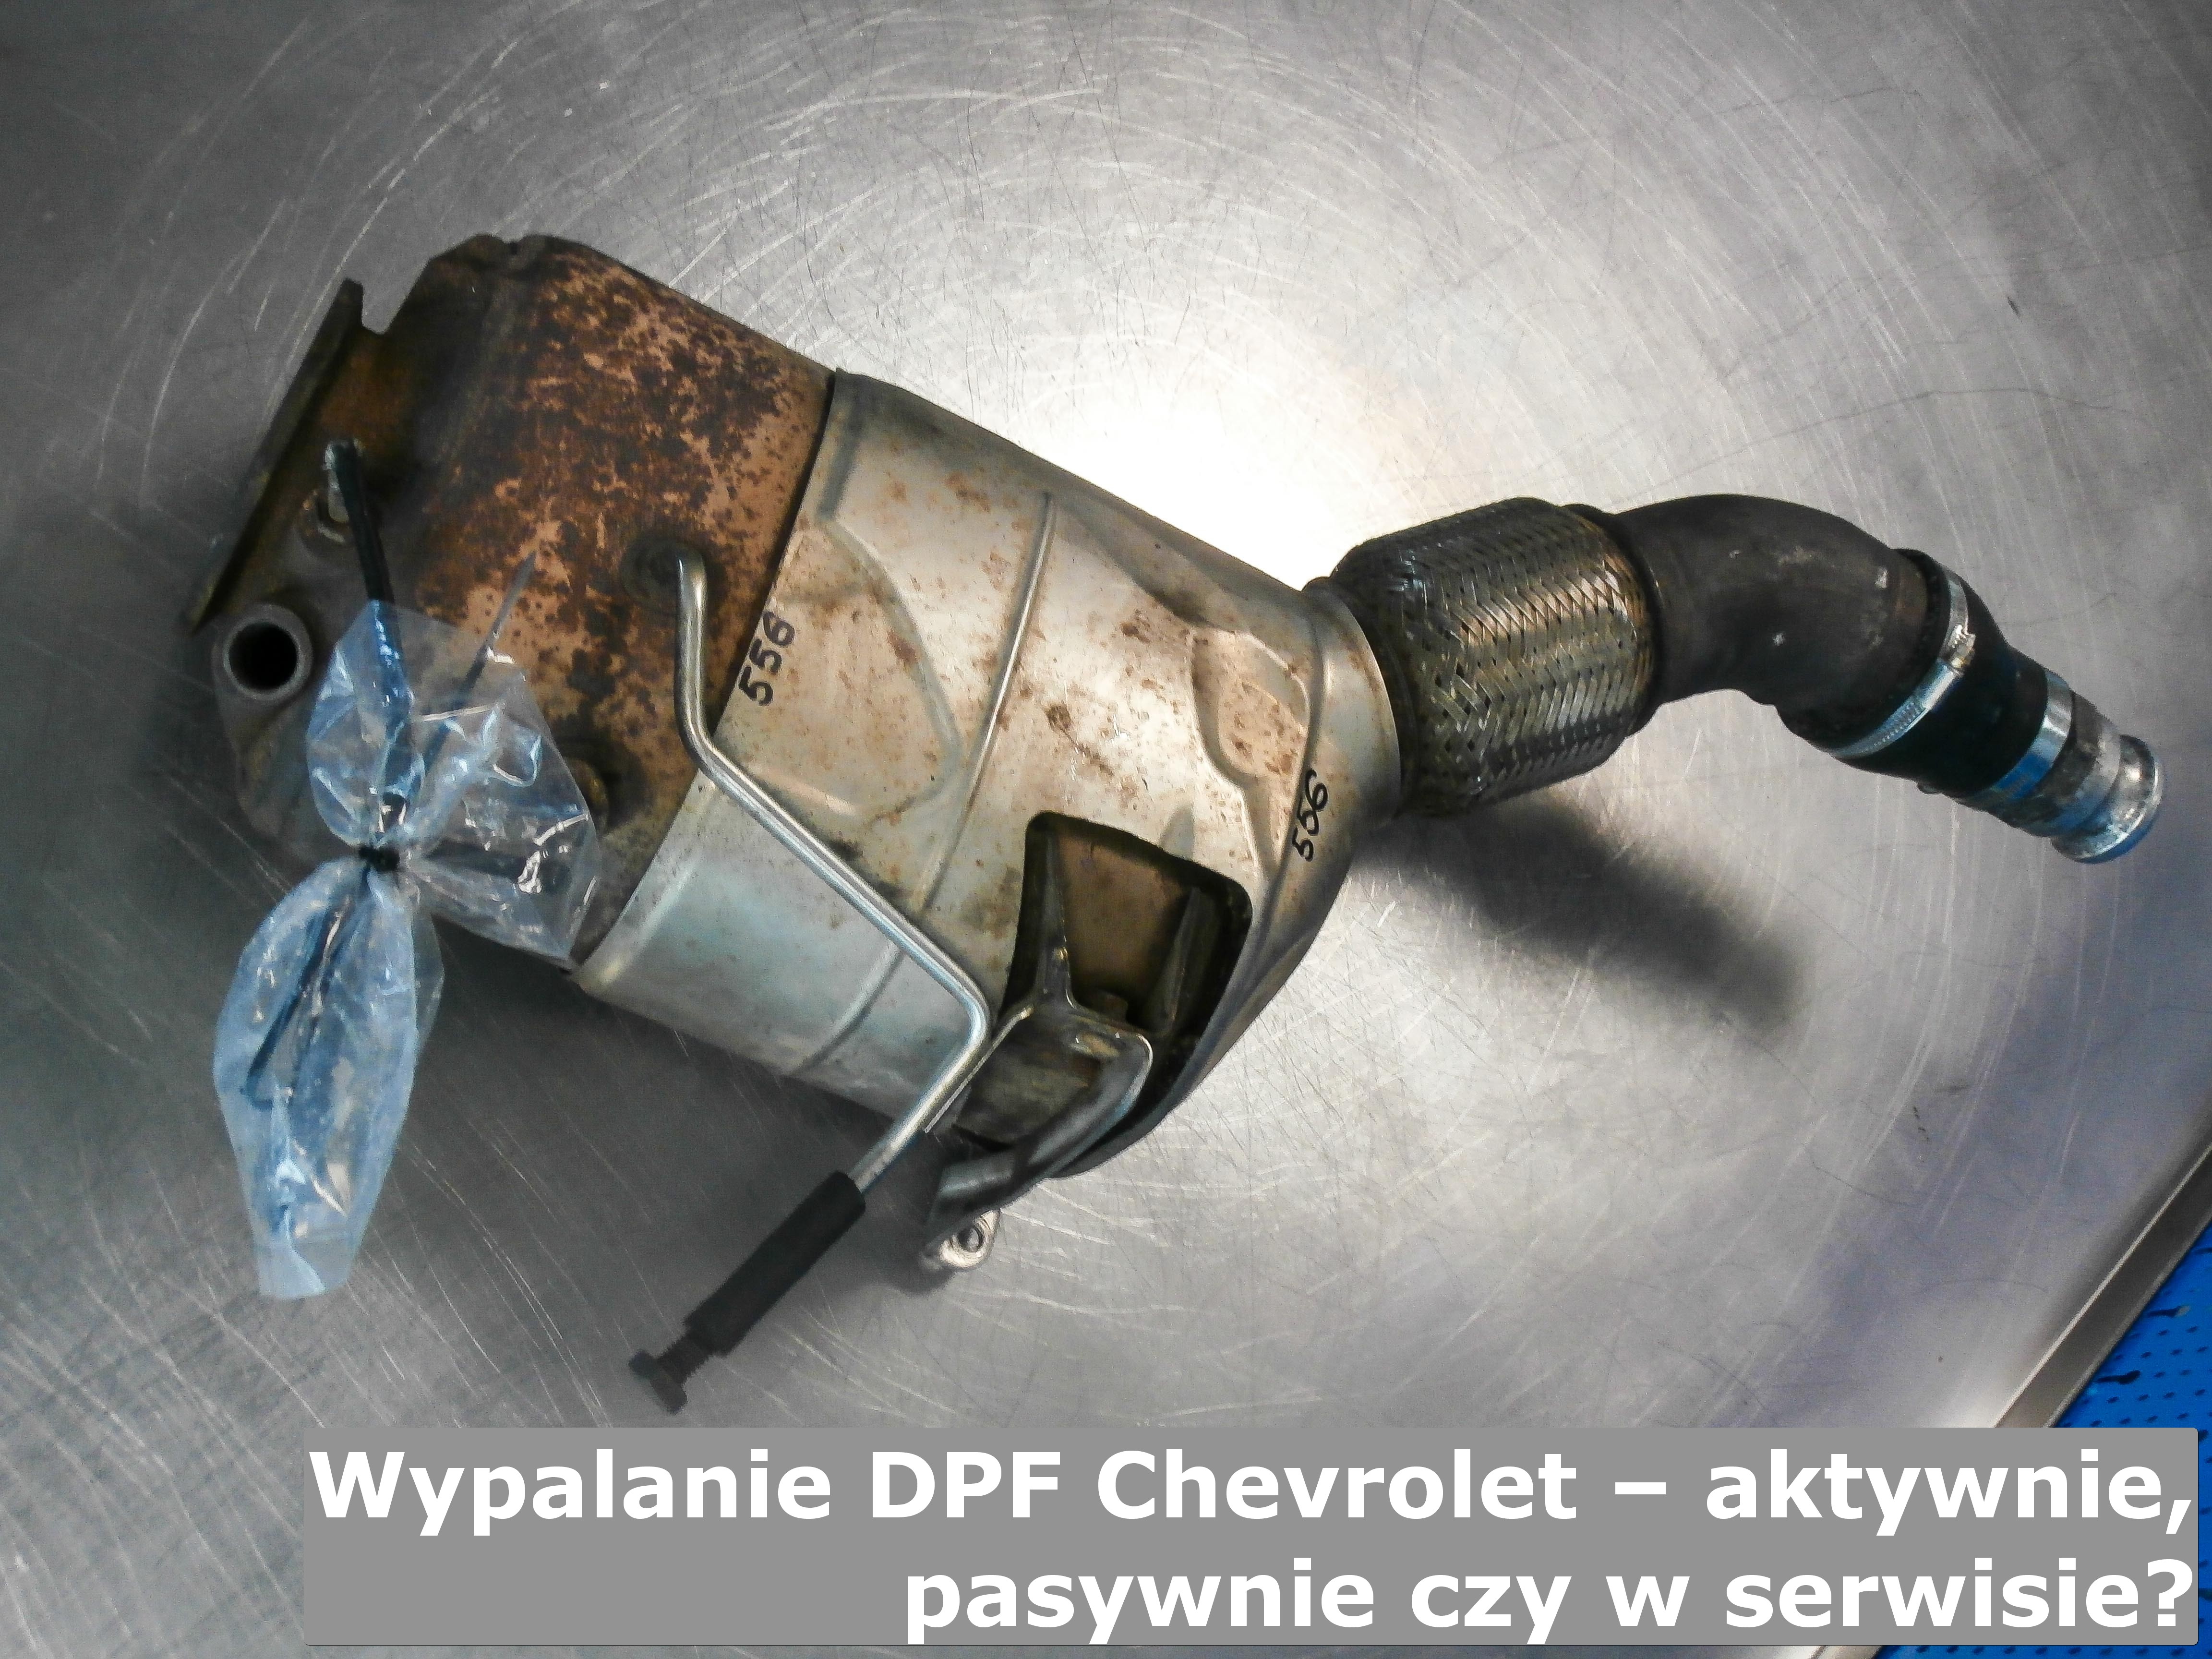 Wypalanie DPF Chevrolet część 17 filtrydpffap.pl